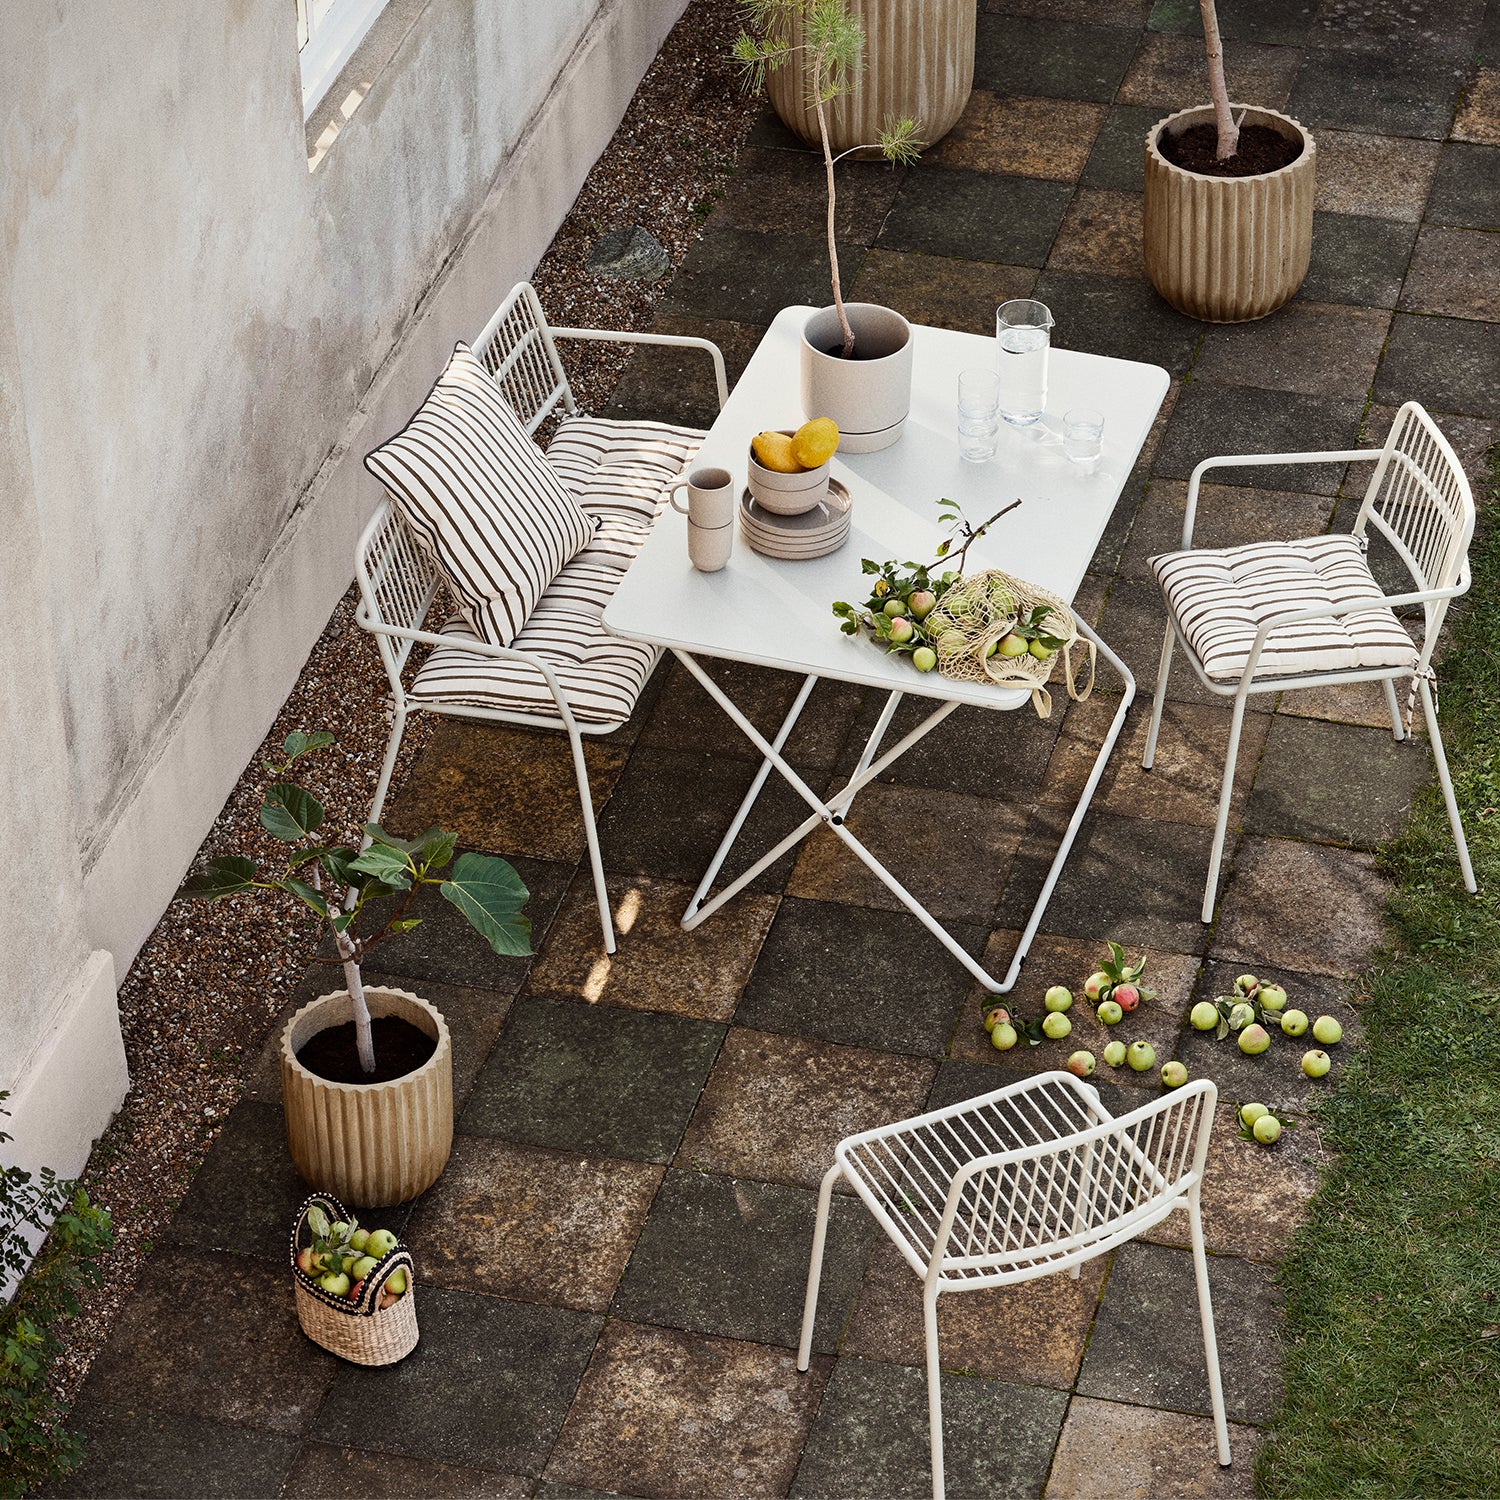 Eden Garden Table - The Design Choice